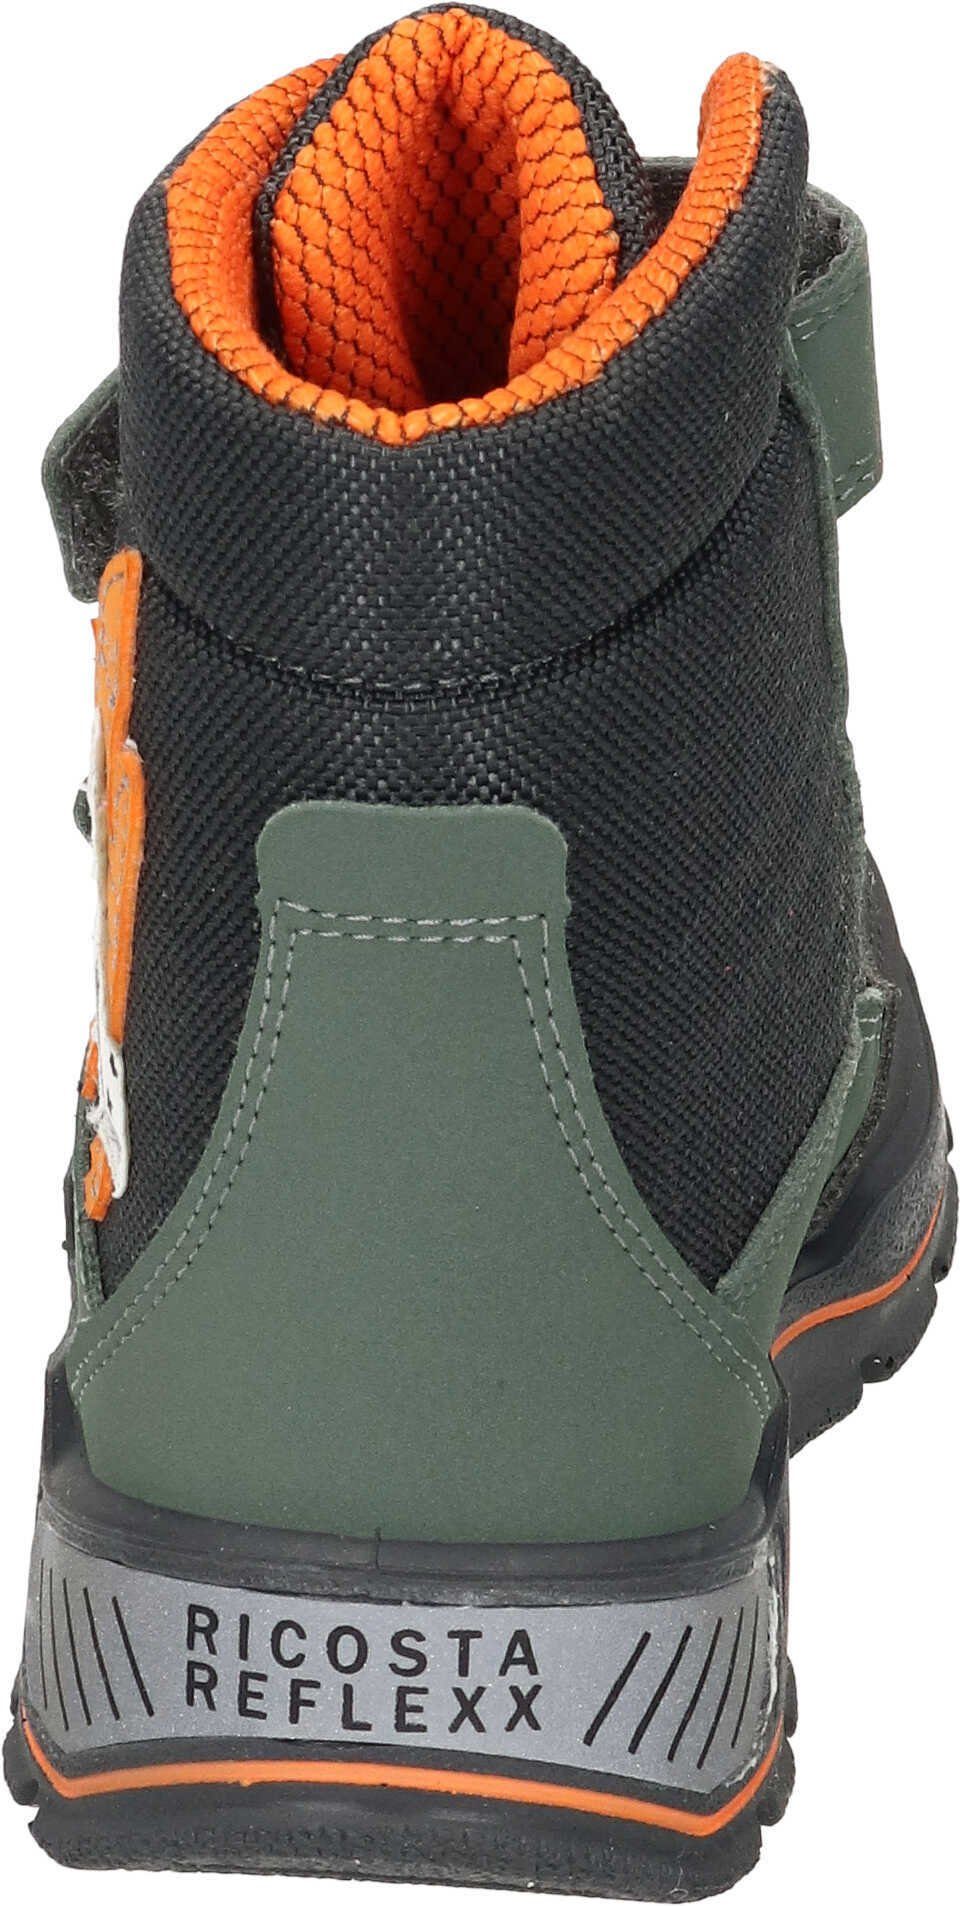 Ricosta (570) Stiefel Stiefel mit salbei/carbon SYMPATEX